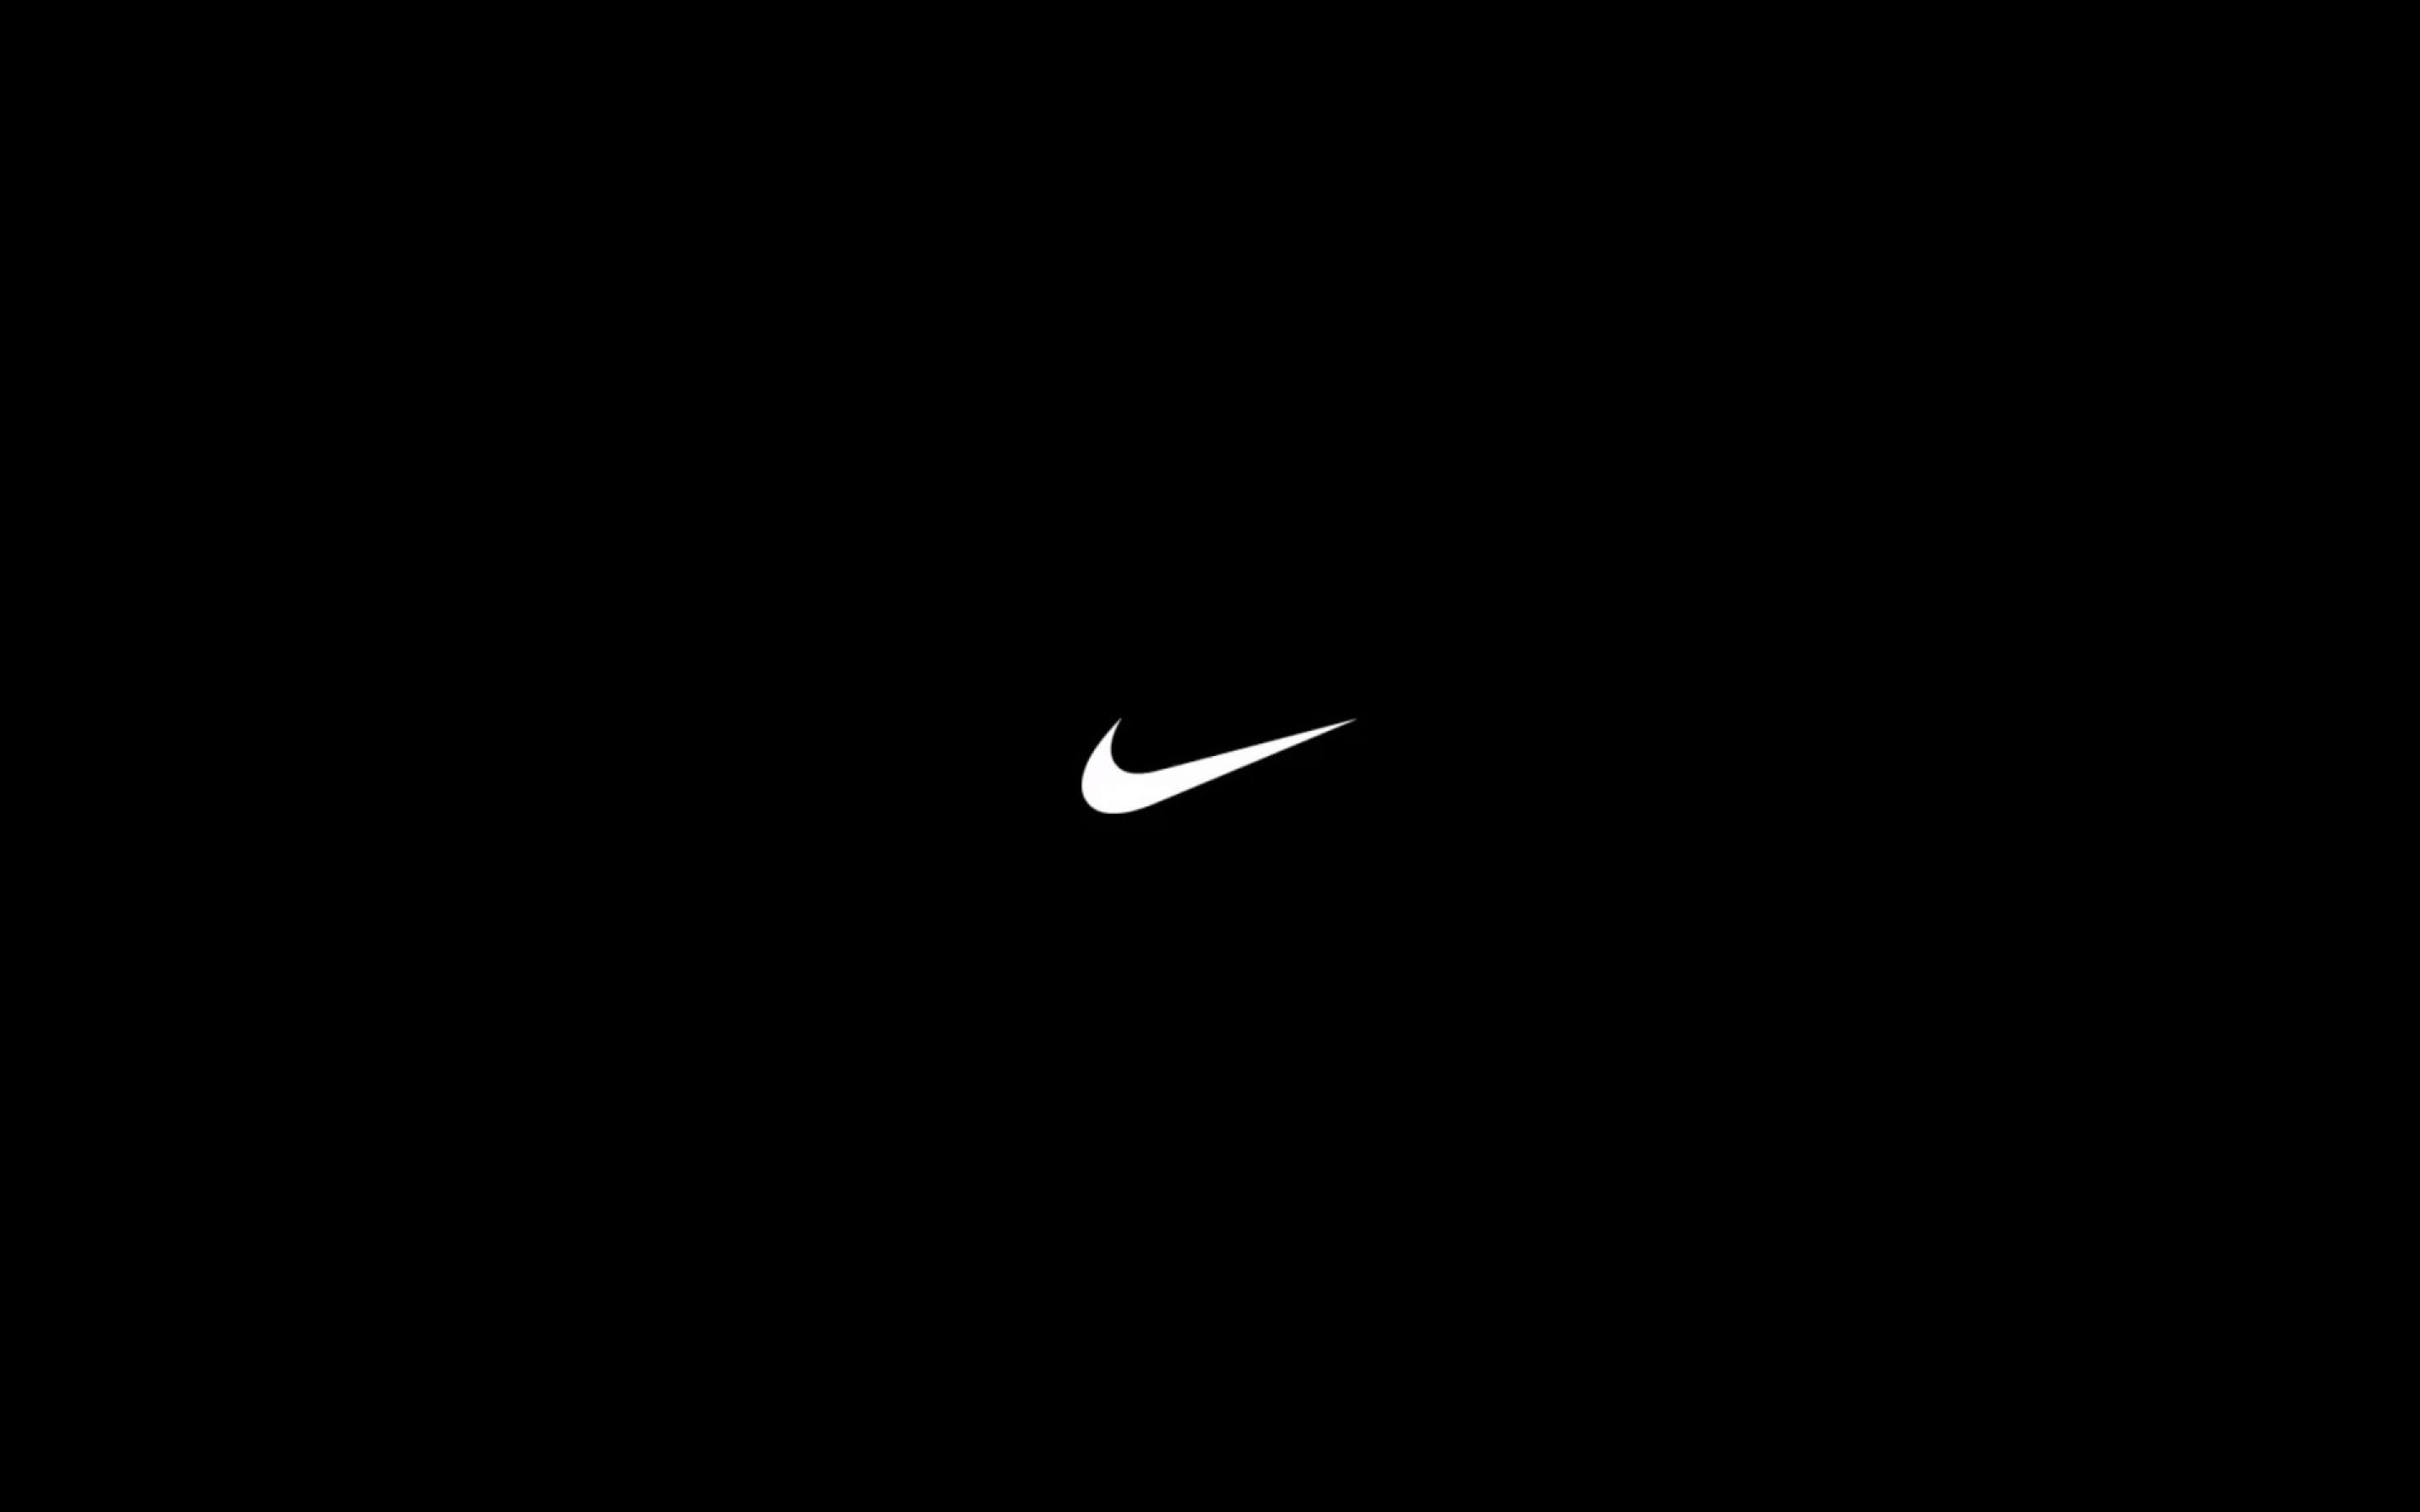 L'arte della vittoria ed il suo capolavoro: la Nike | by Valentino Addevico  | Medium